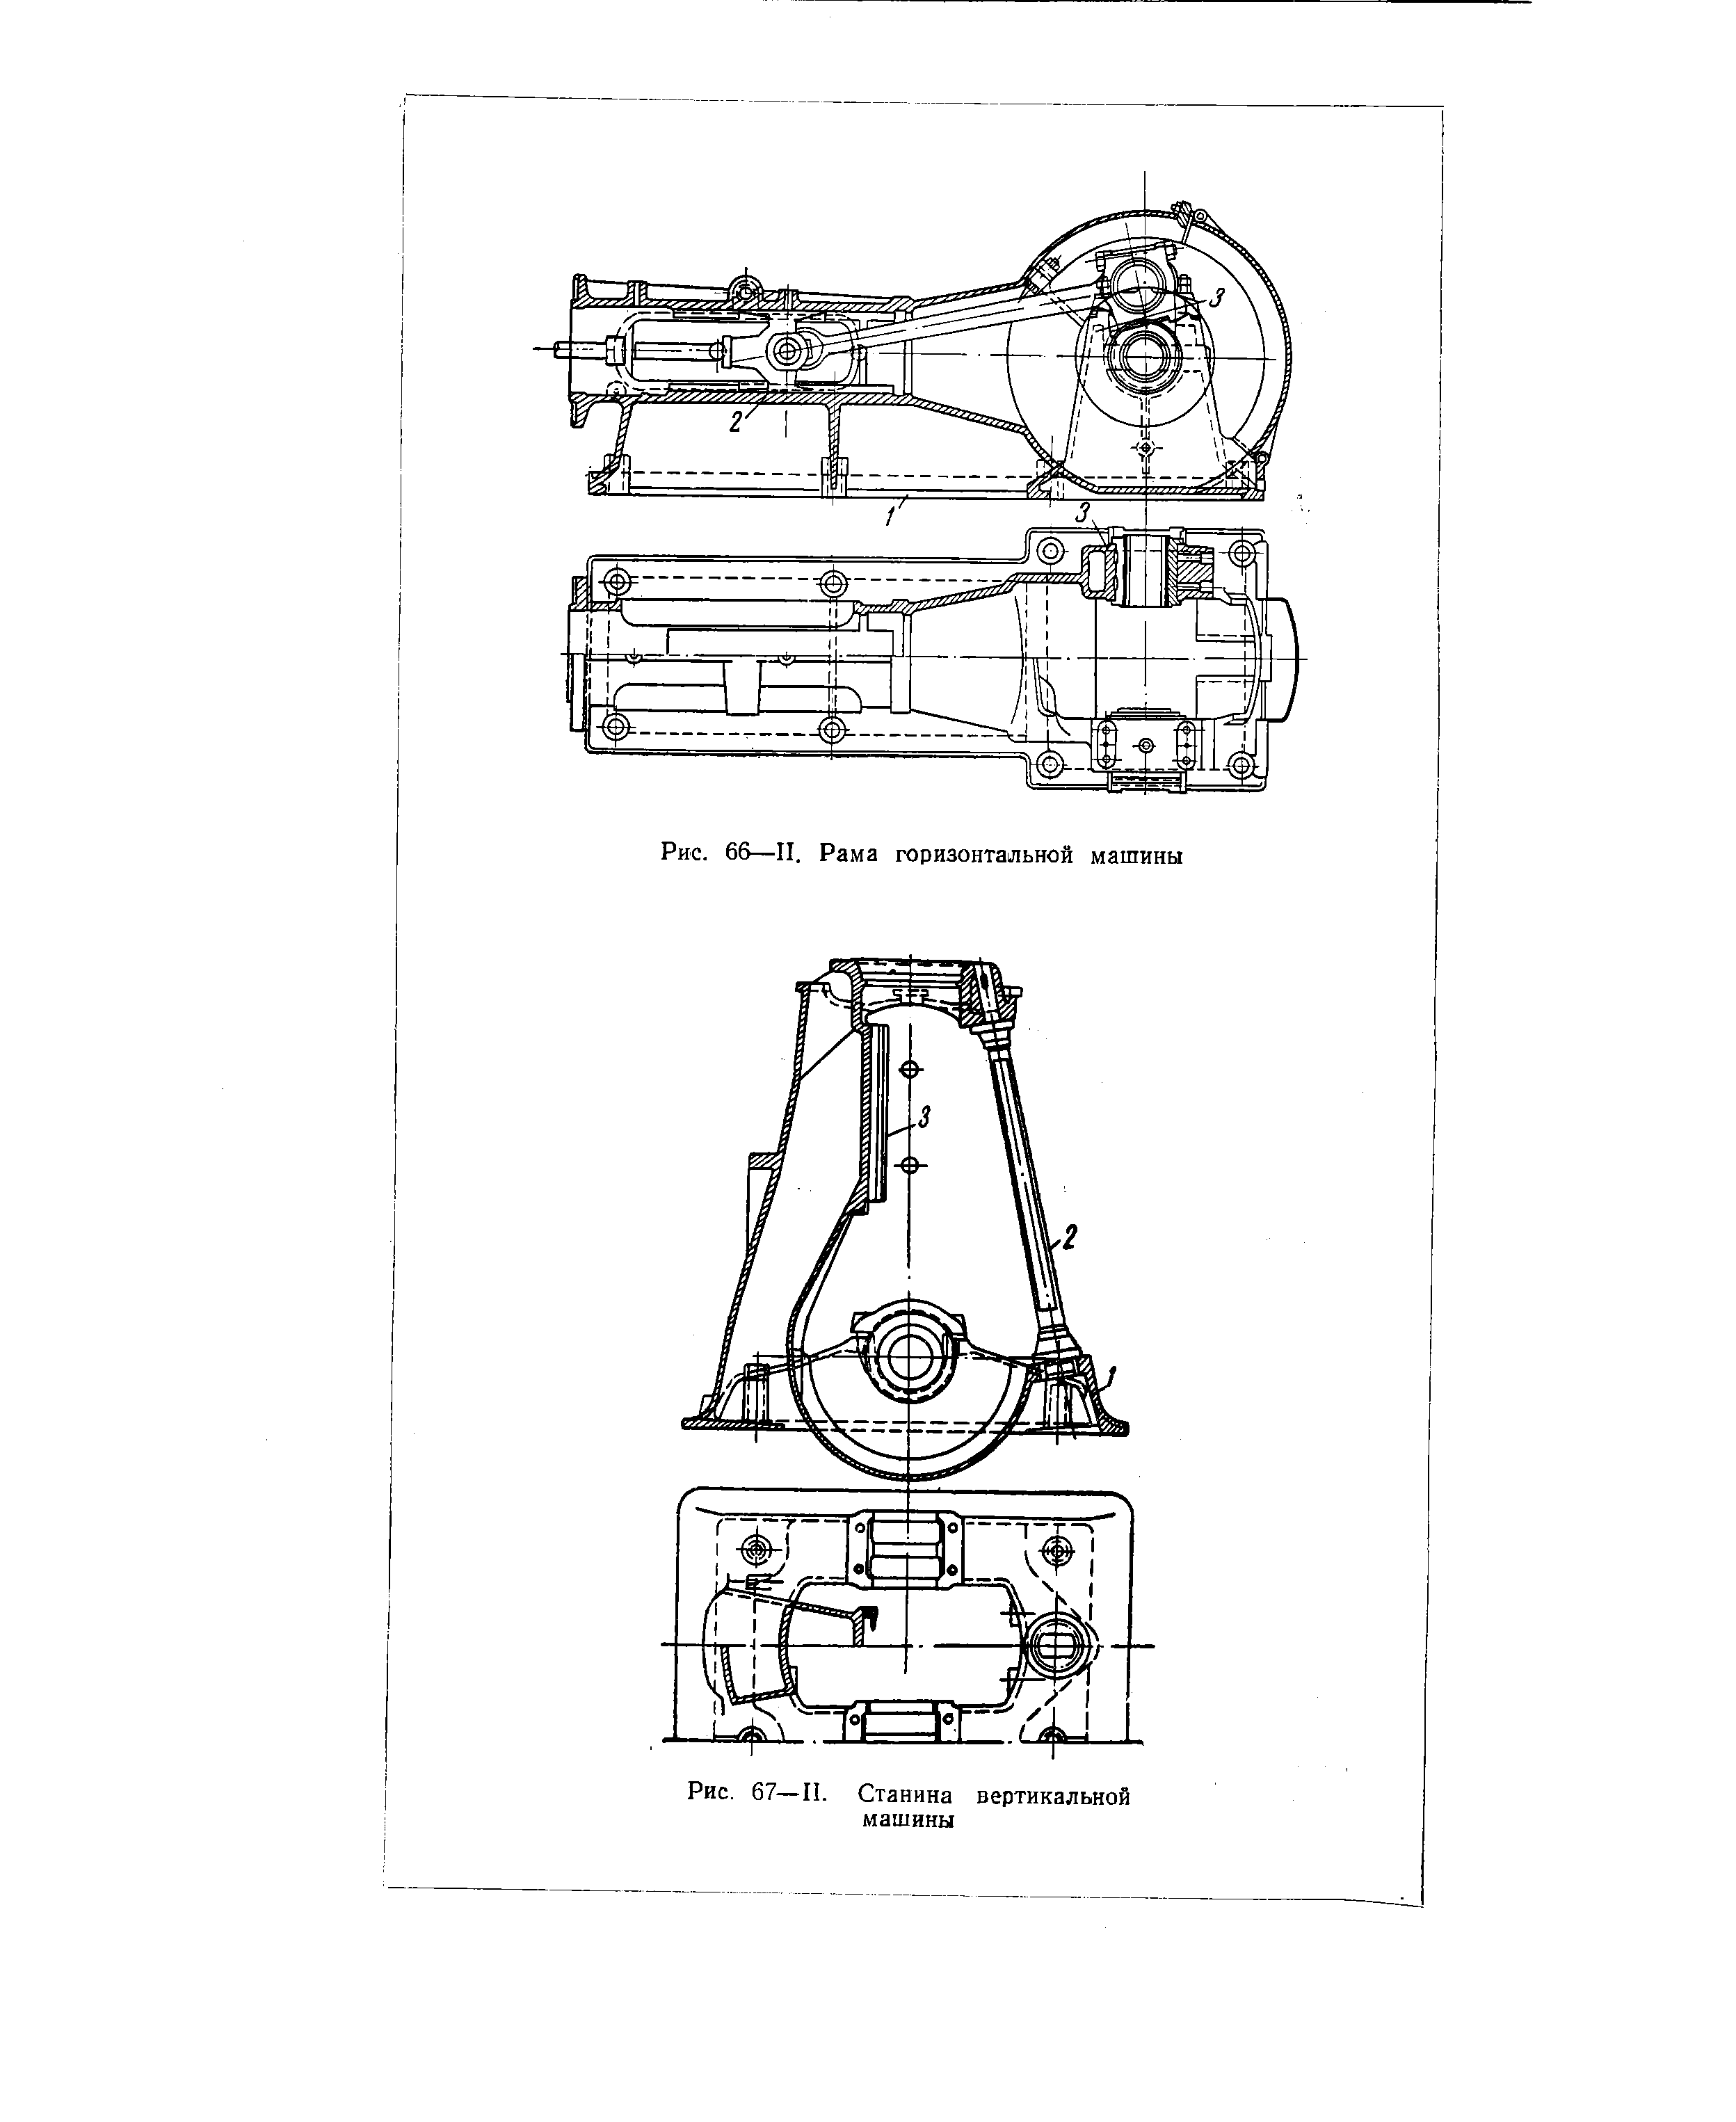 Рис. 67—II. Станина вертикальной машины
